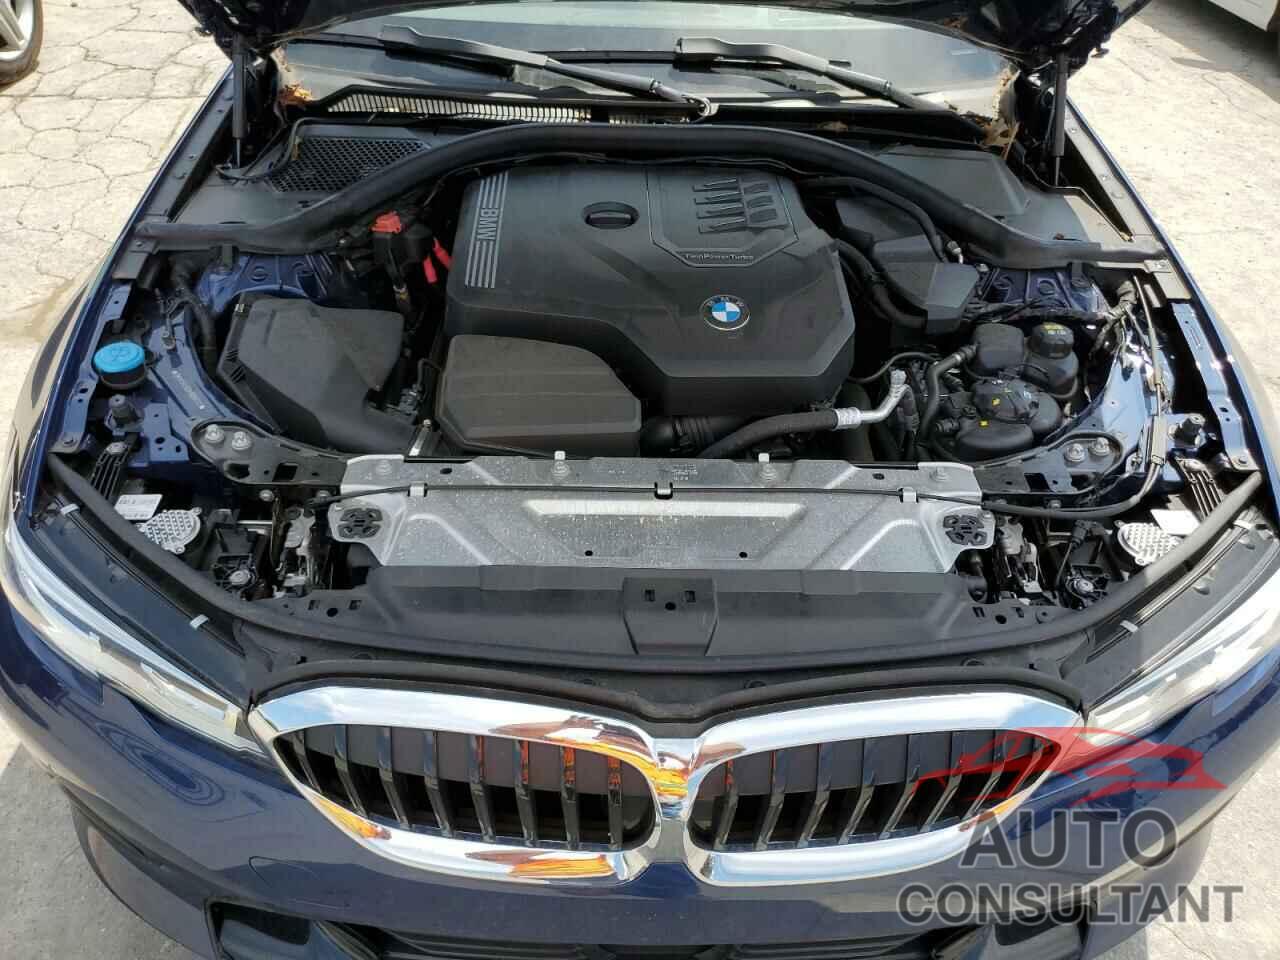 BMW 3 SERIES 2021 - 3MW5R1J00M8B62221